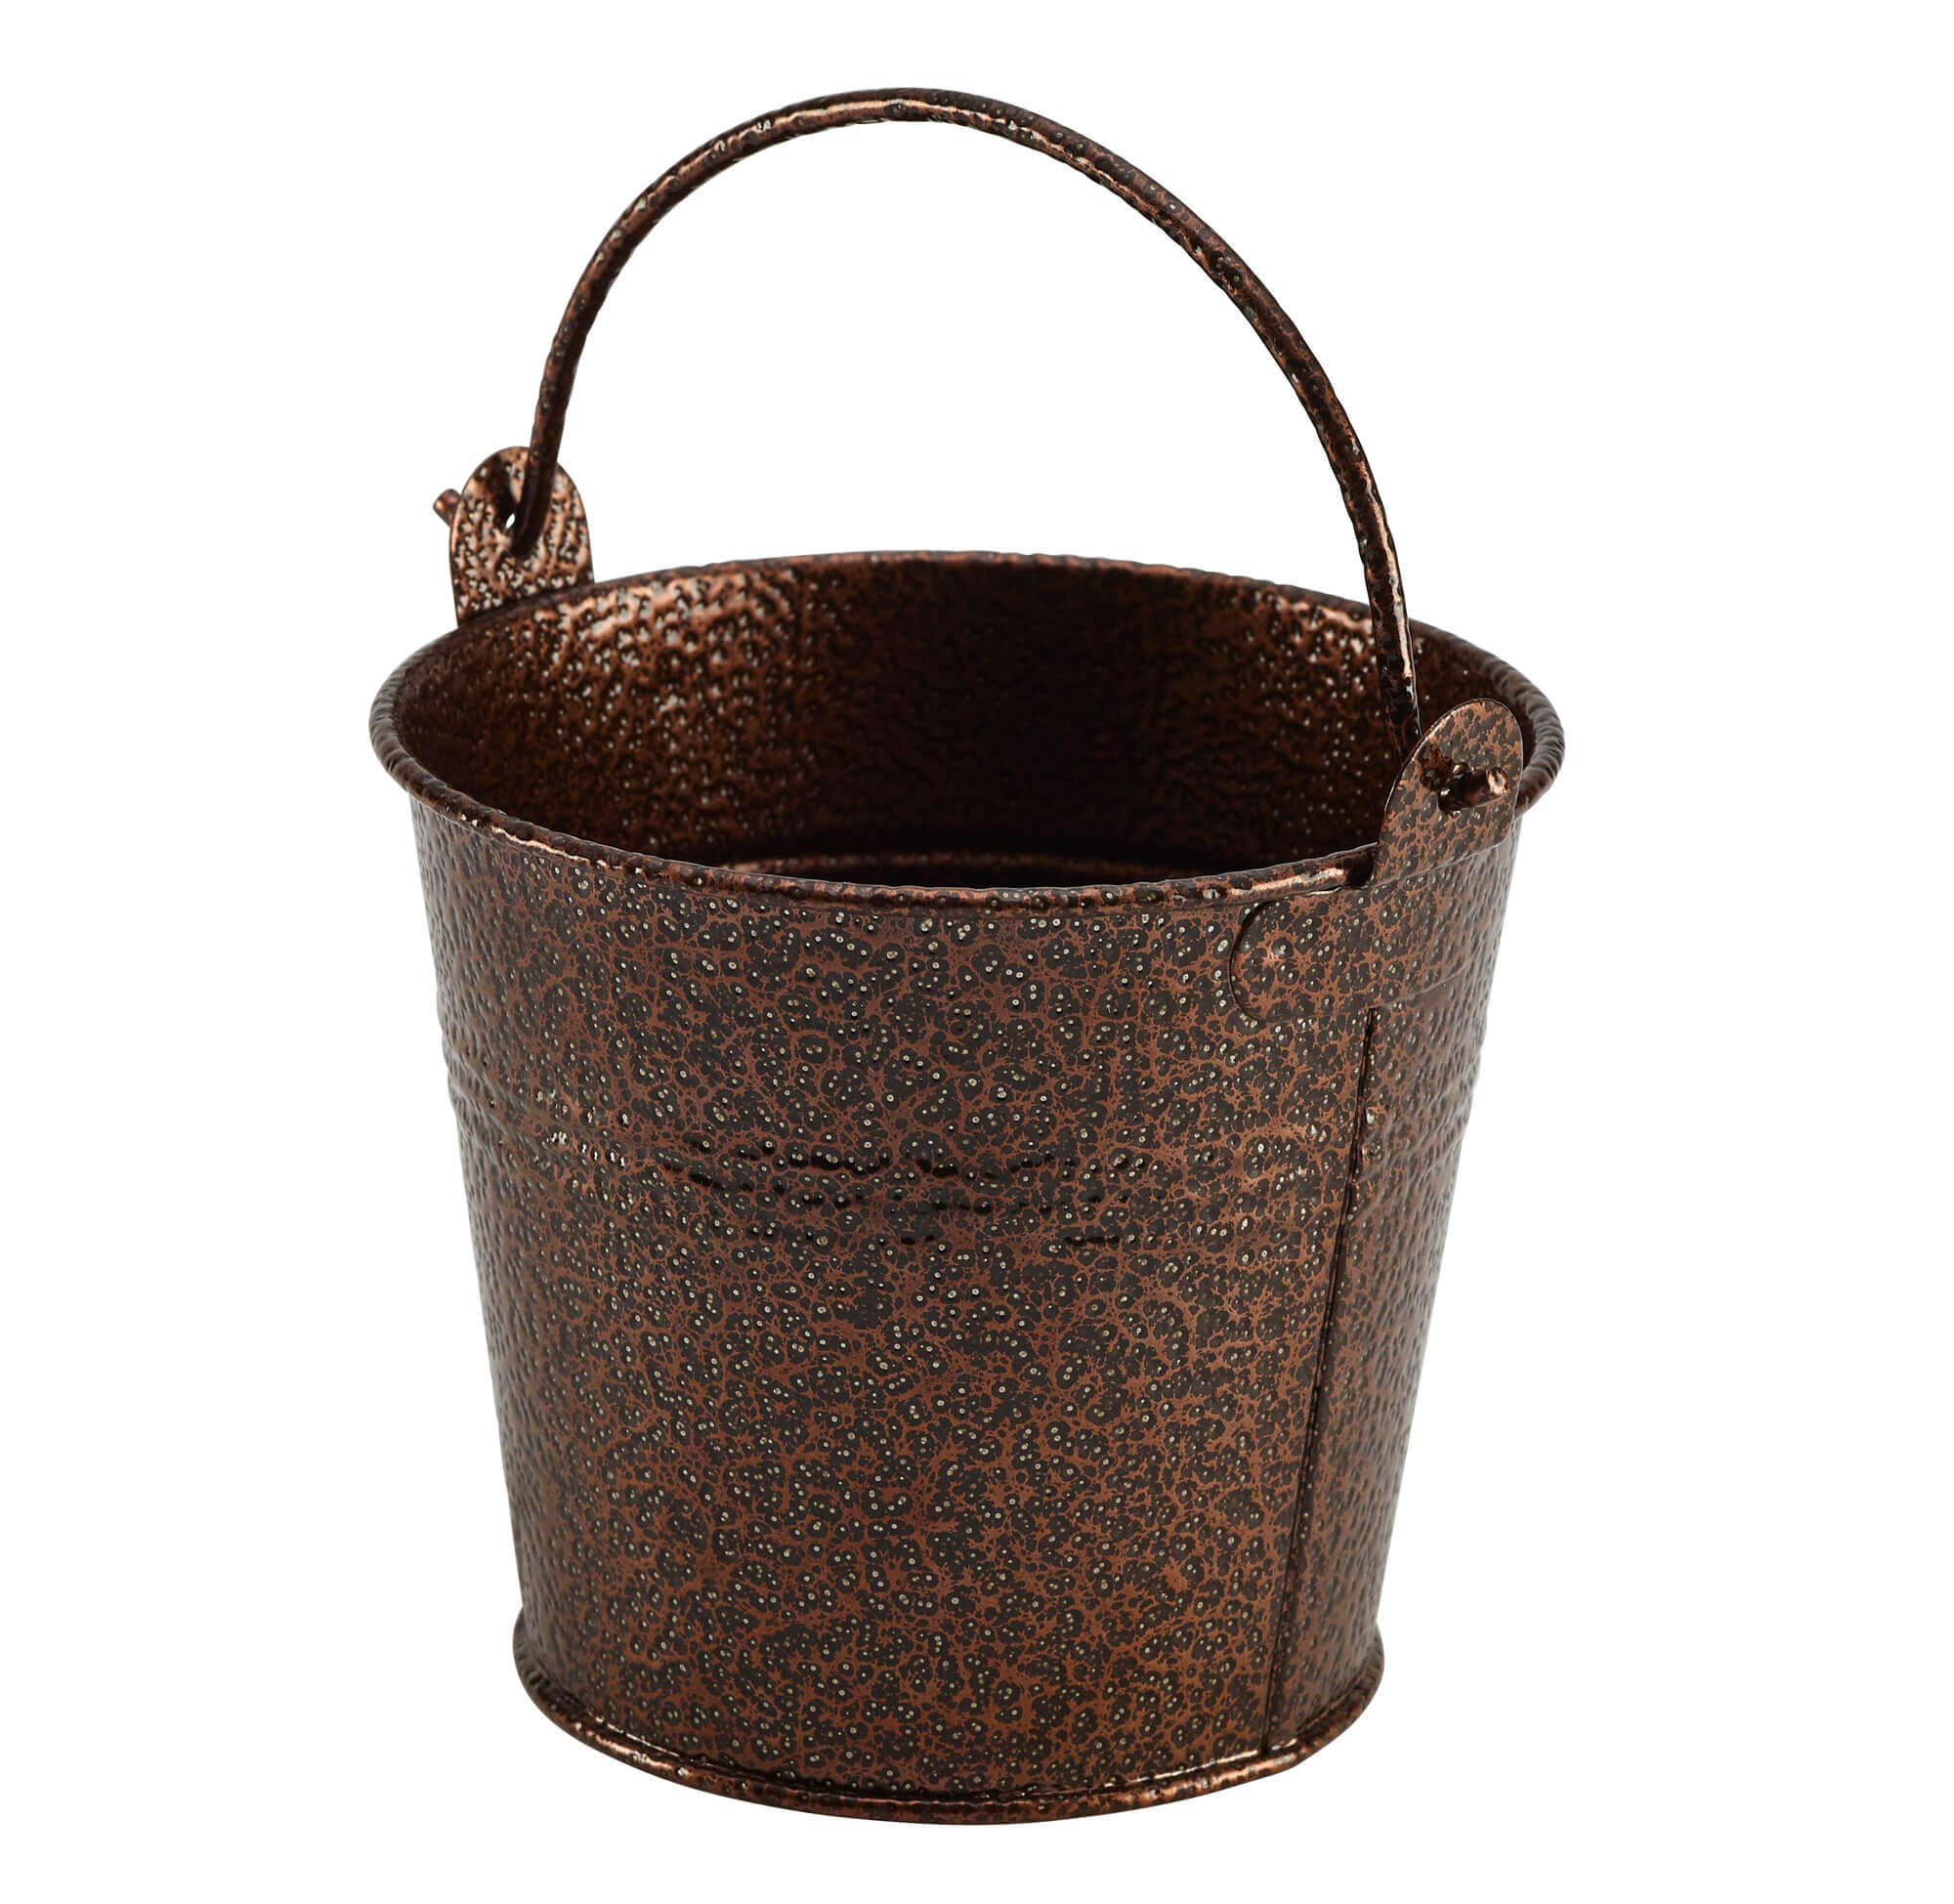 Bucket, galvanized steel copper-colored - 500ml